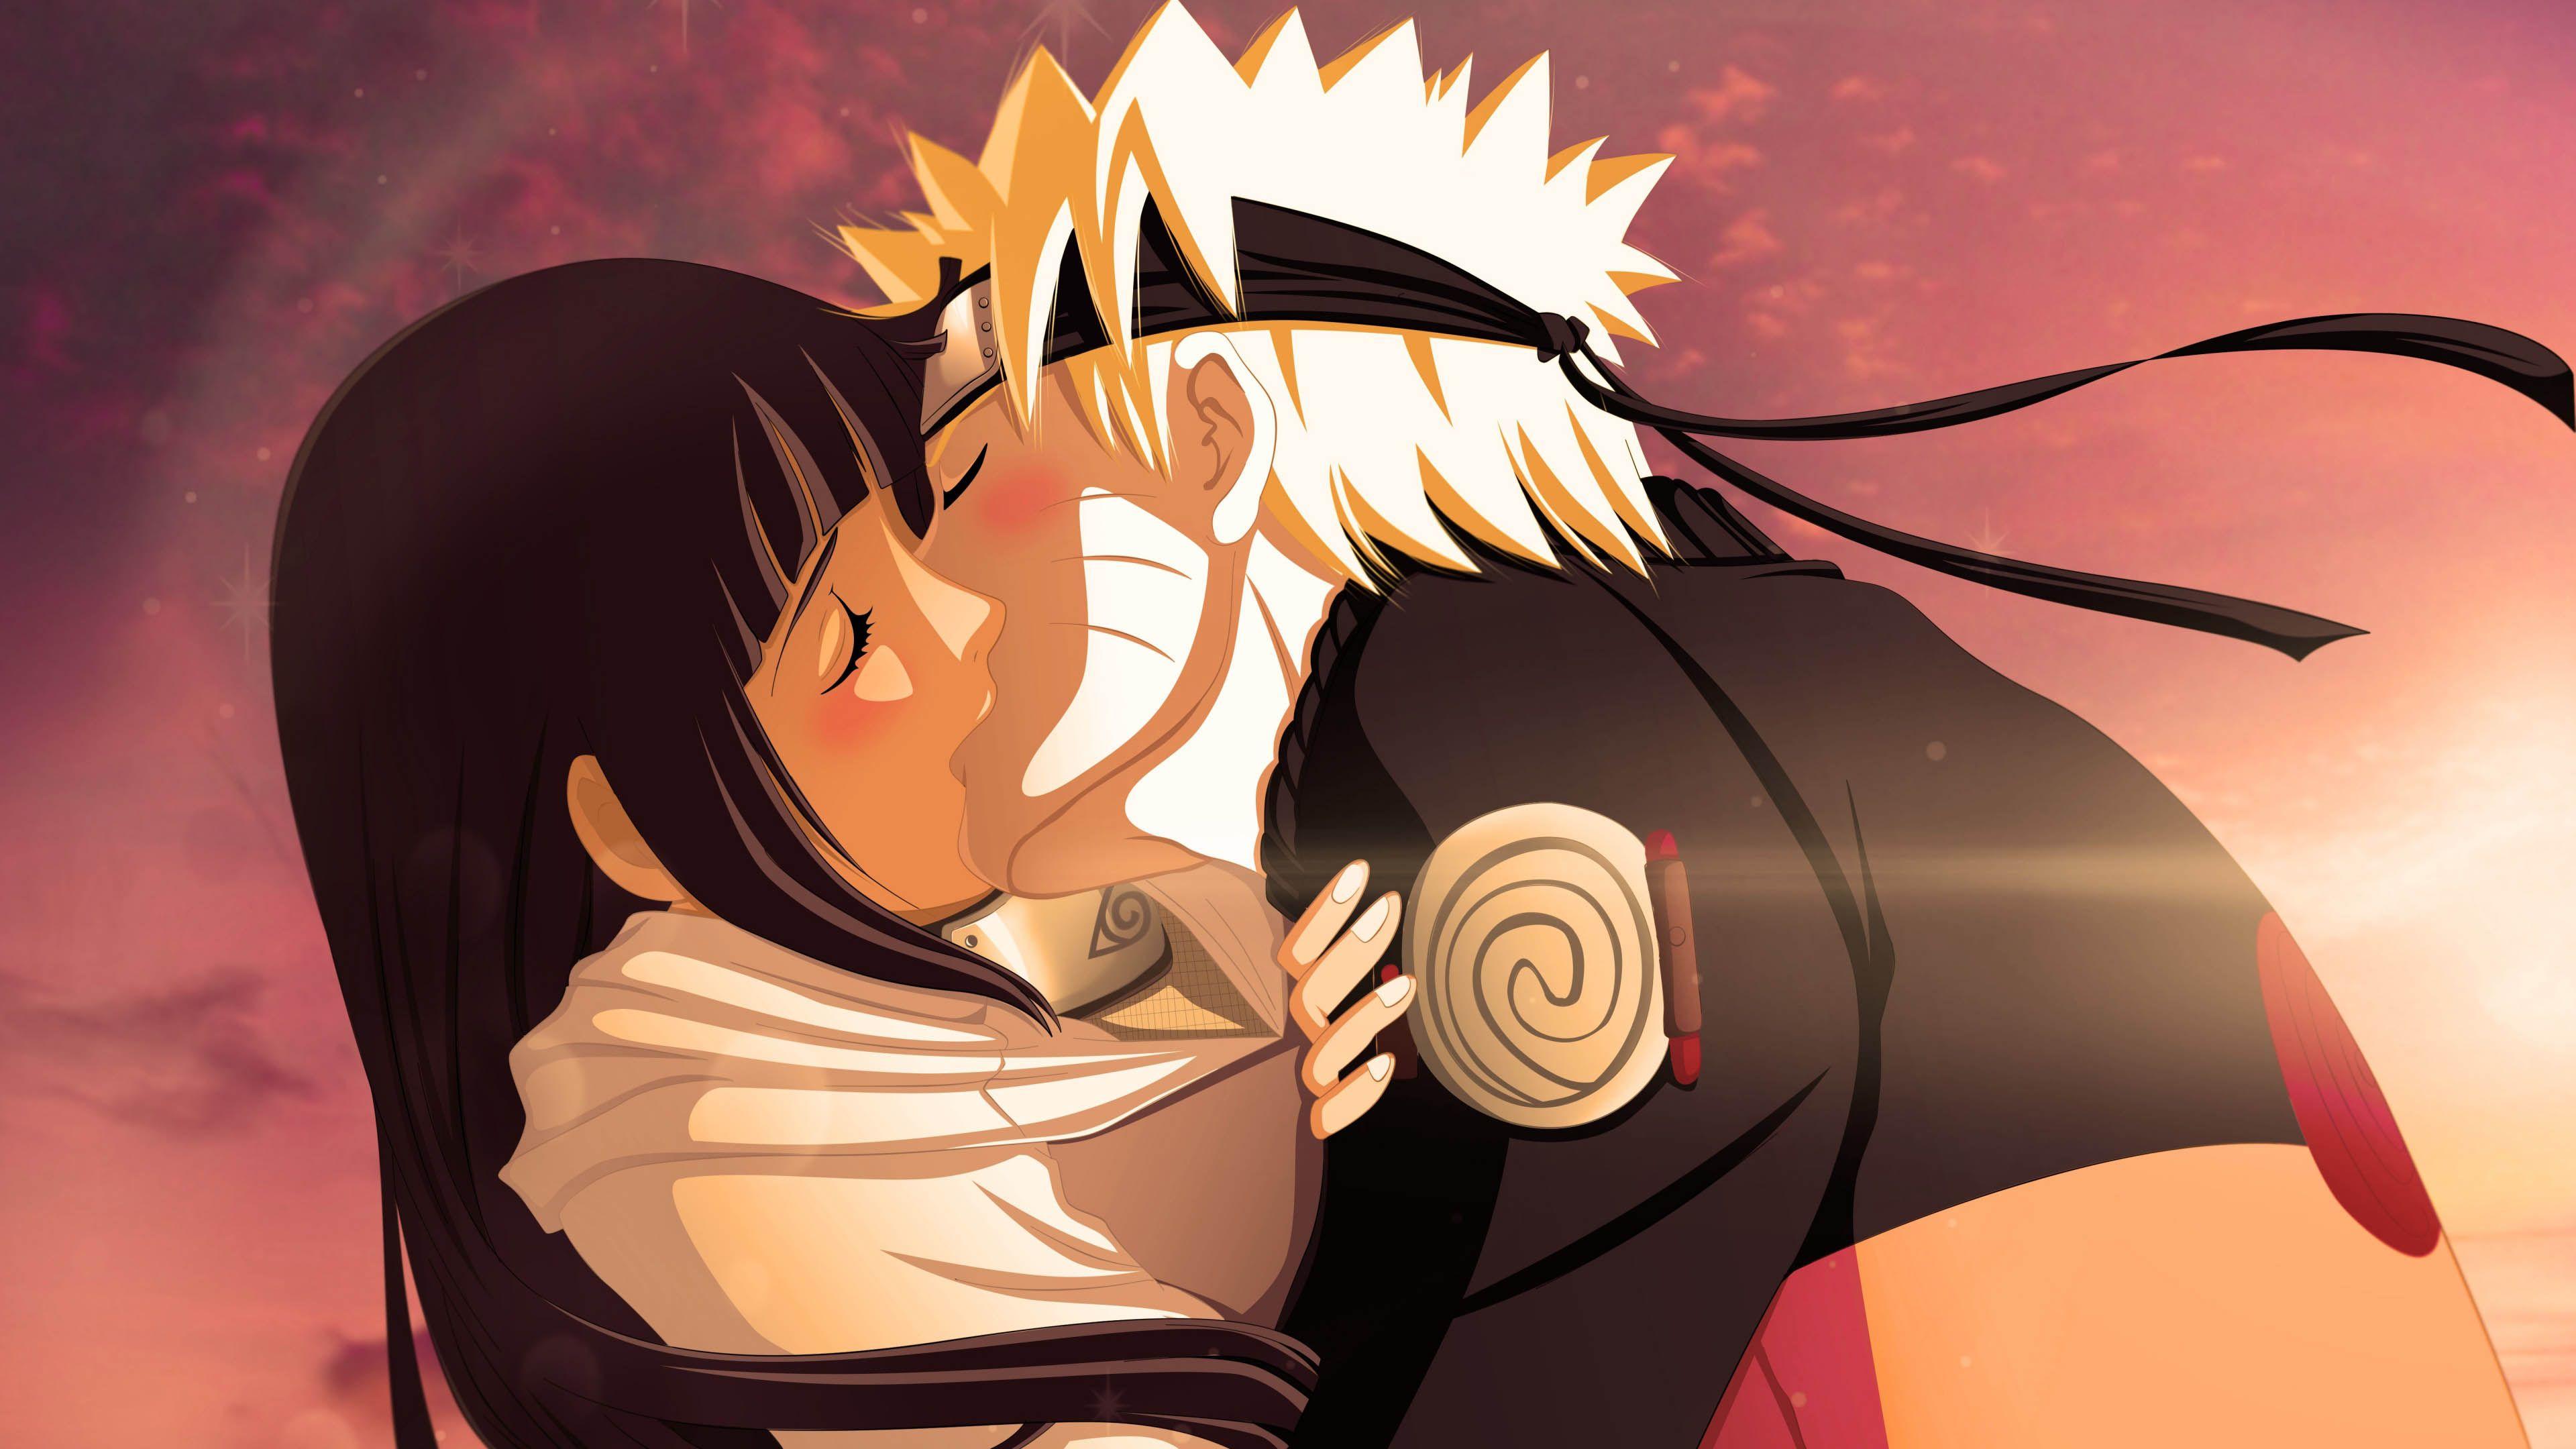 sakura and ino and hinata kiss